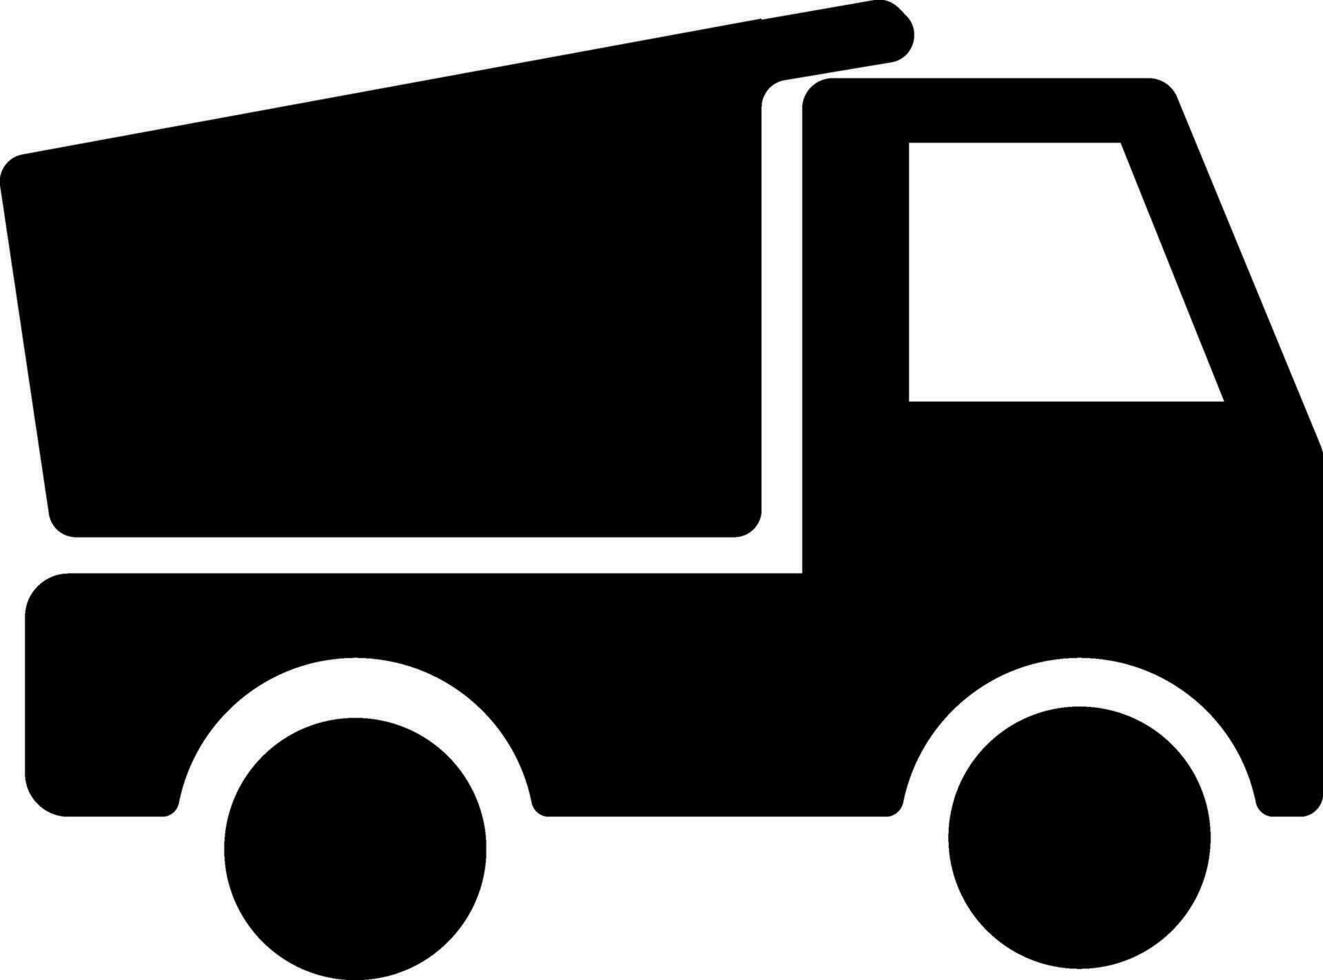 Vector flat sign or symbol of a Dump Truck.